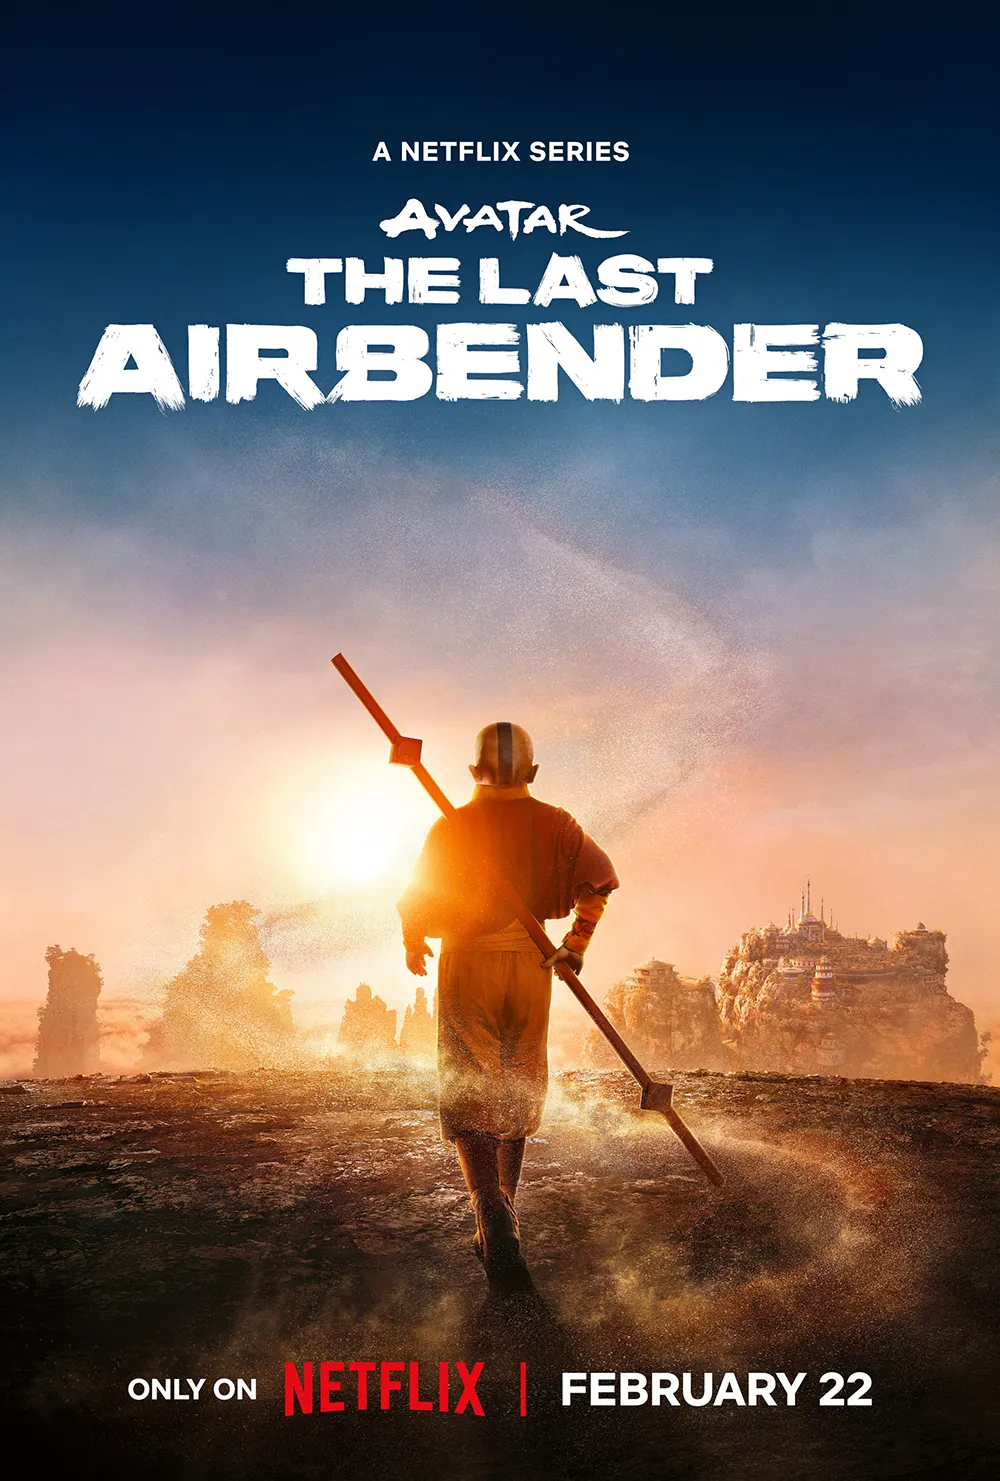 Trailer Από Τη Νέα Σειρά "Avatar: The Last Airbender"